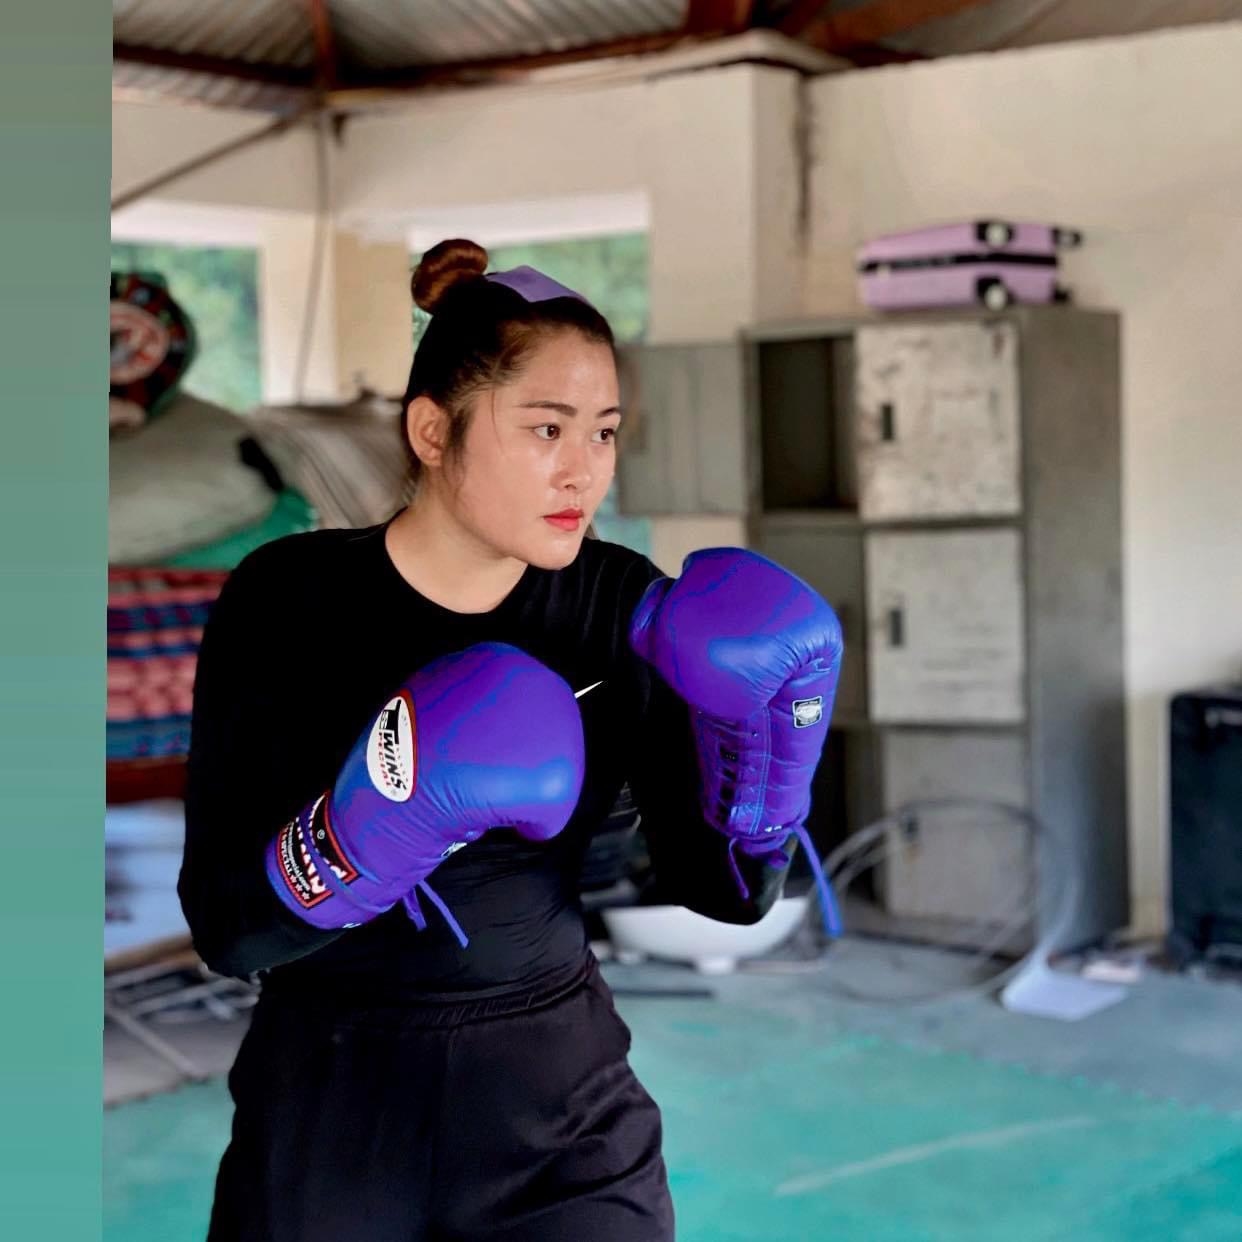 Vượt lên mọi khó khăn, cô gái dân tộc Thái luôn chăm chỉ tập luyện, với quyết tâm chinh phục những tấm huy chương danh giá trên đấu trường Boxing